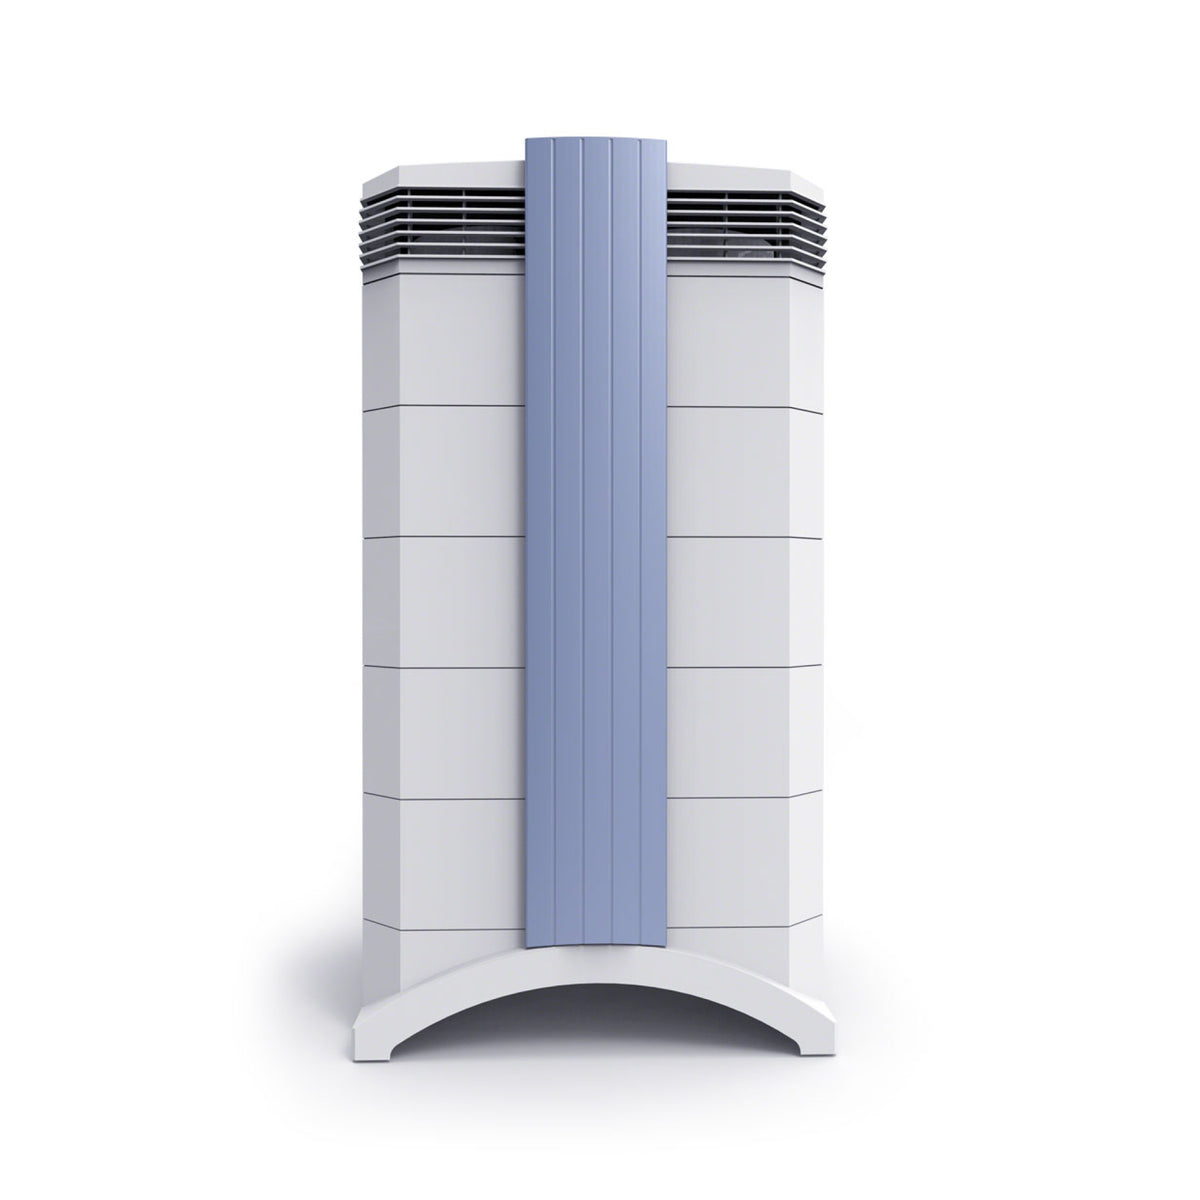 IQAir GC Series air purifier